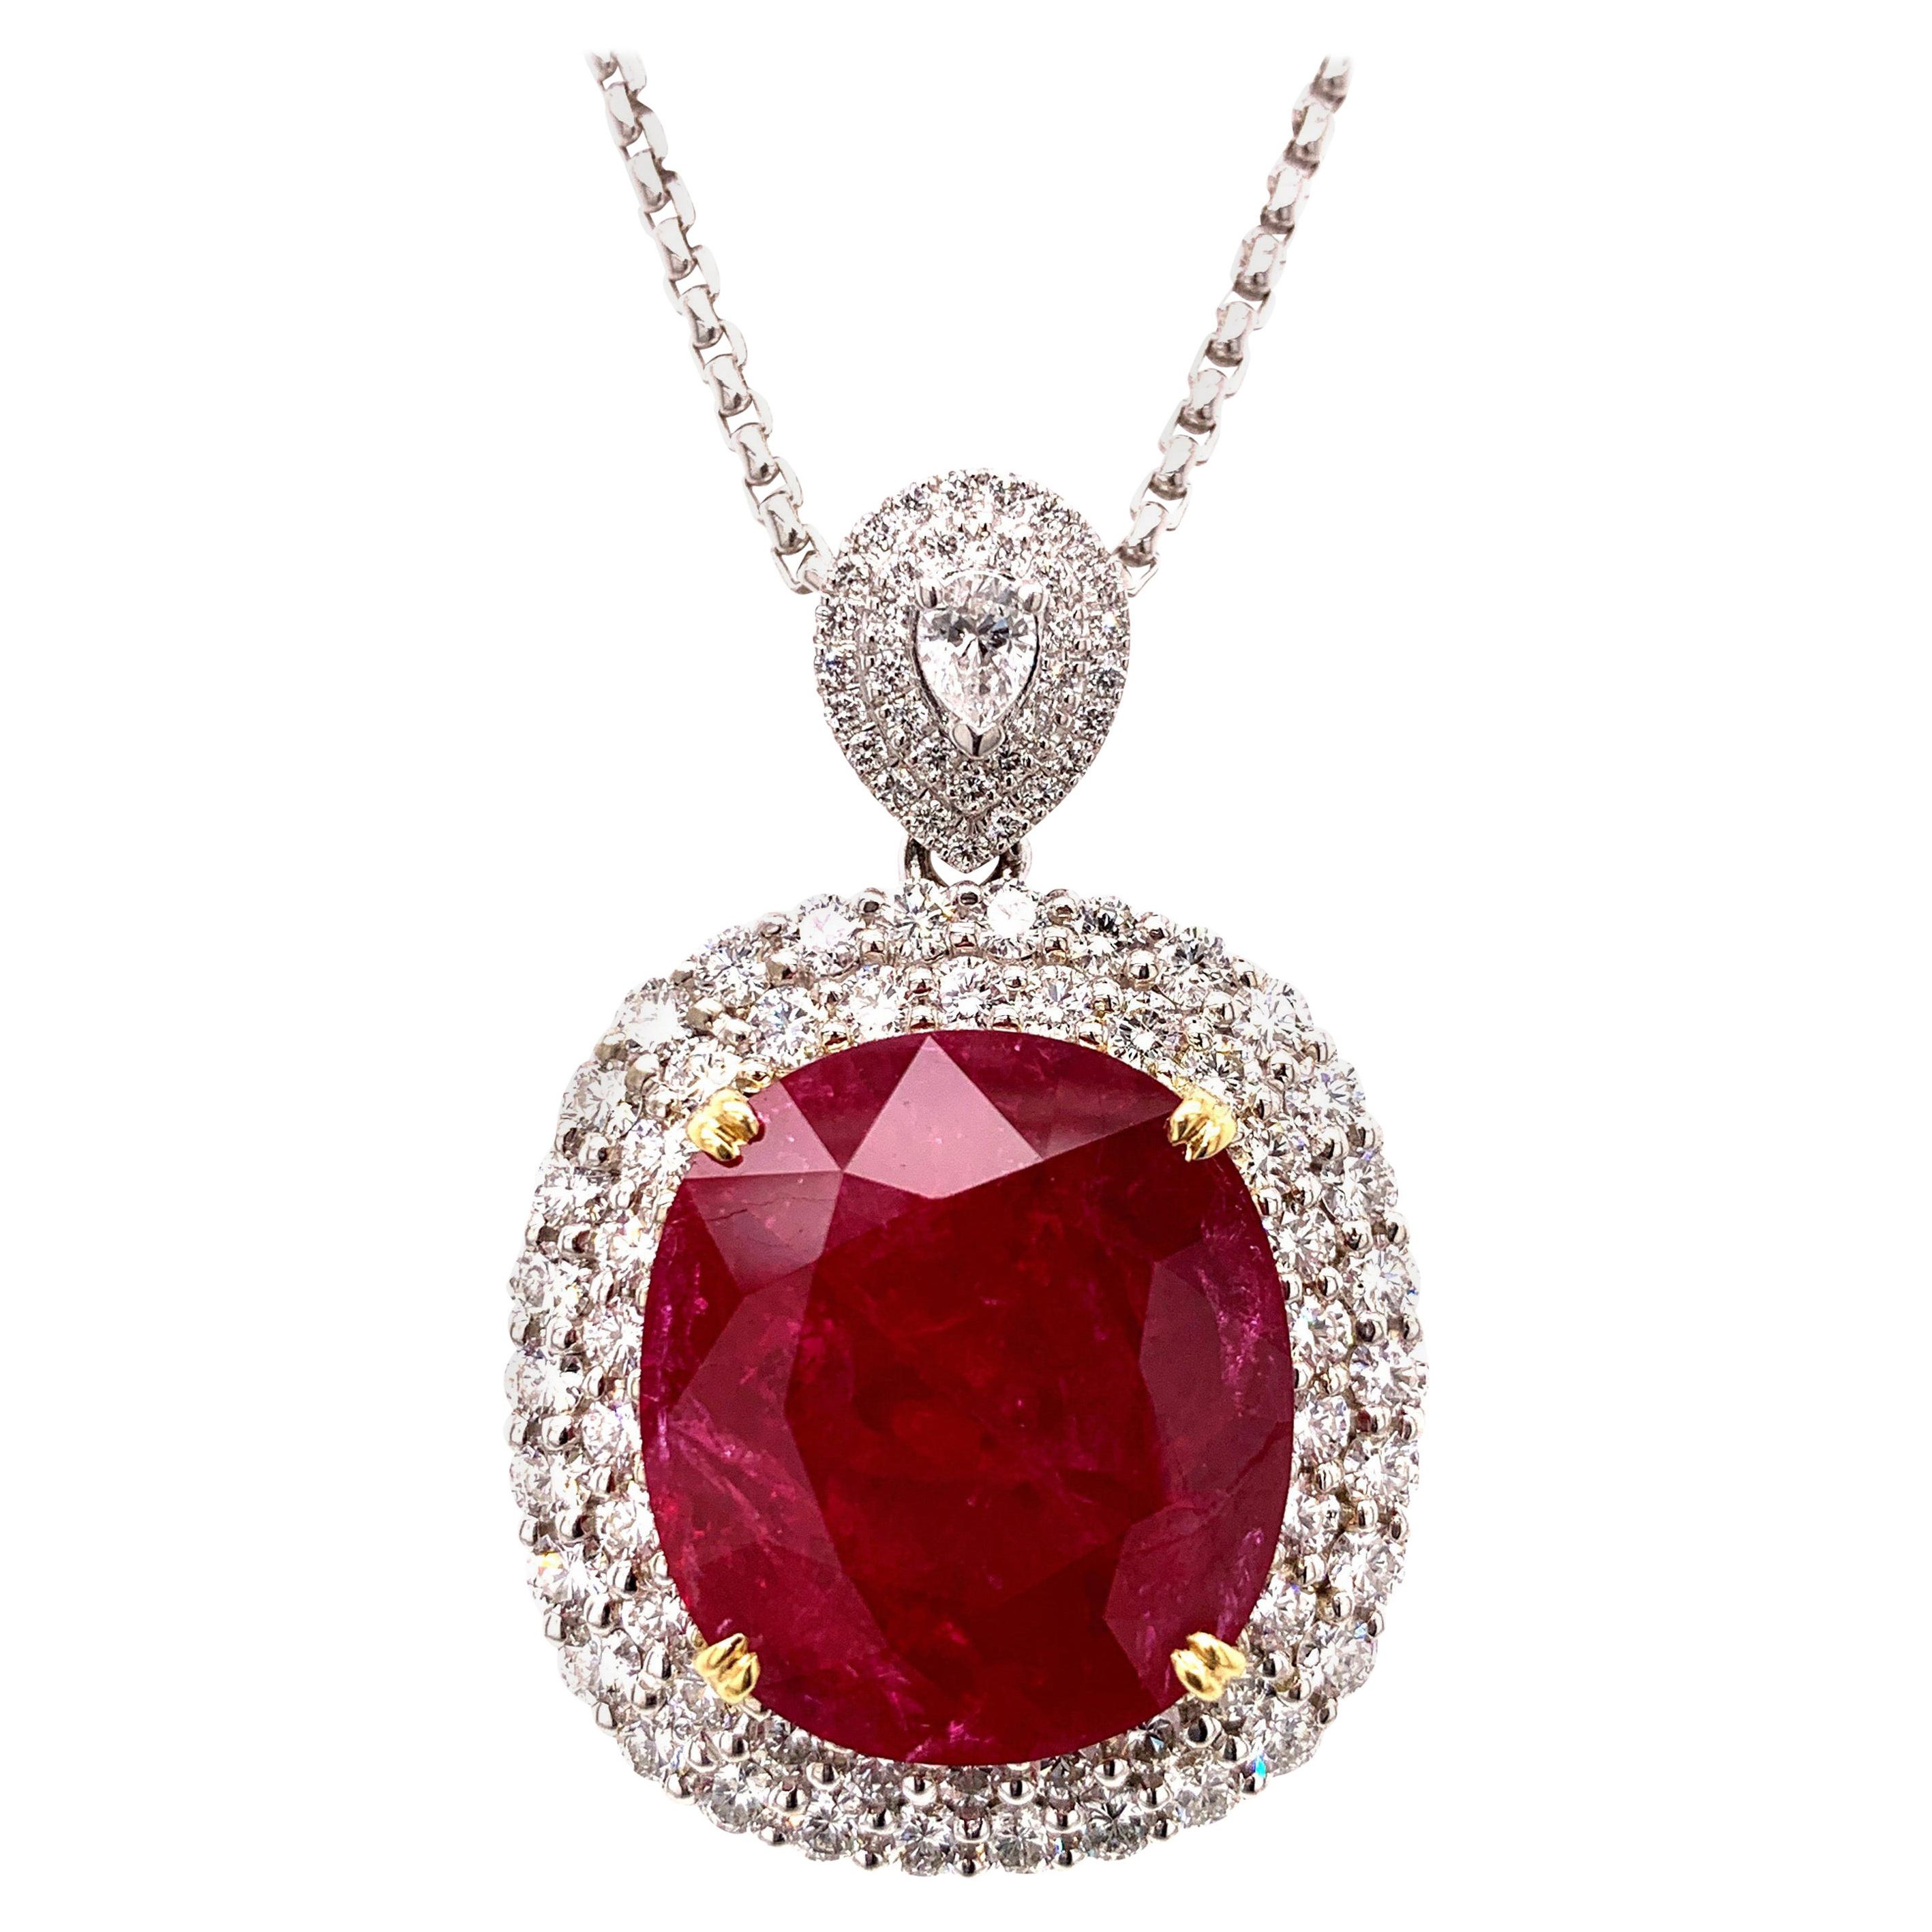 Mozambique 24.21 Carat Ruby Diamond Pendant Necklace For Sale